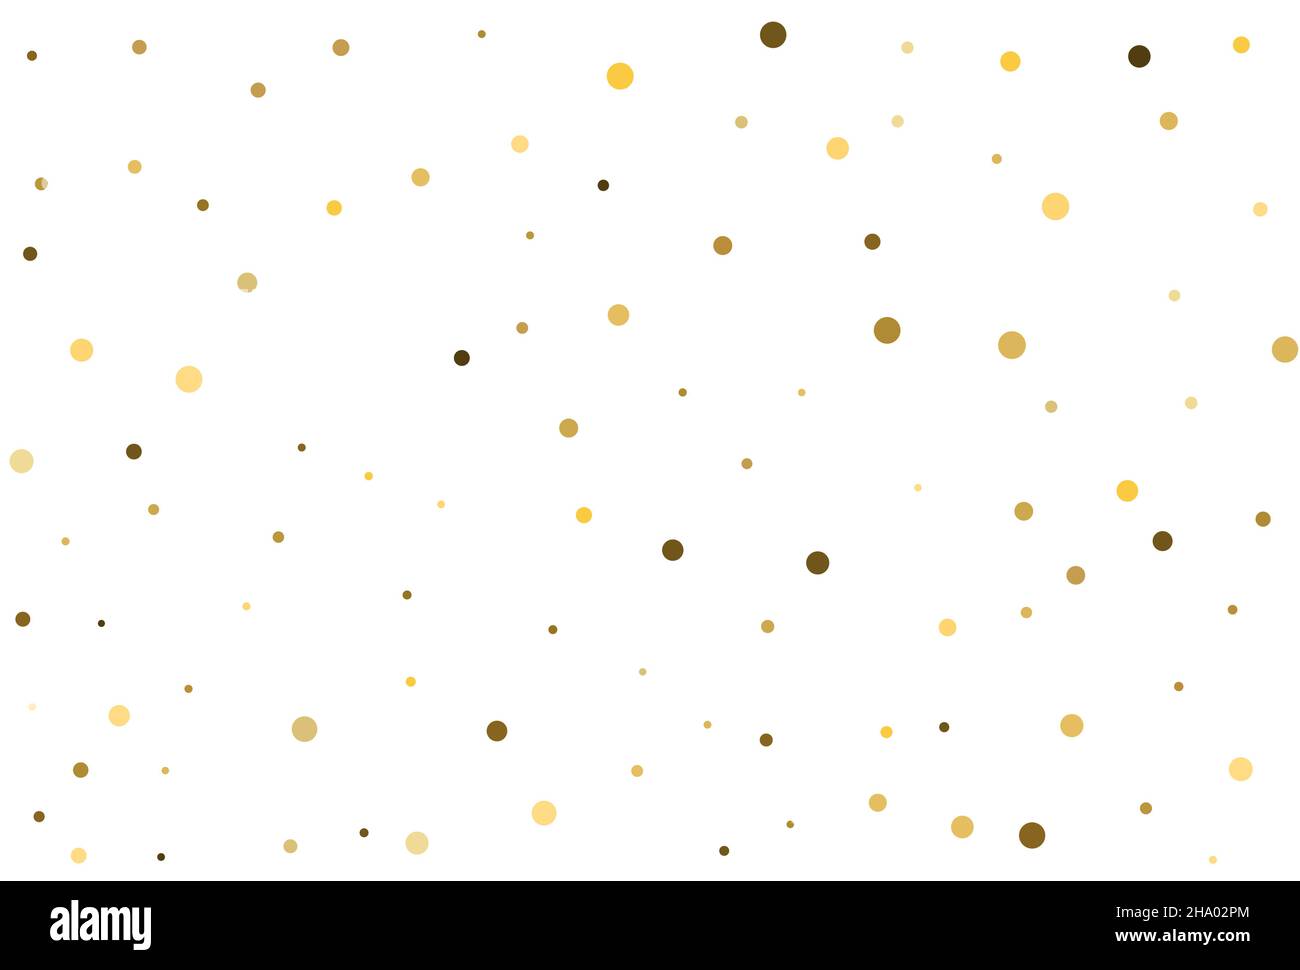 Weihnachtlicher Hintergrund mit goldenem rundem Konfetti. Vektor. Stock Vektor